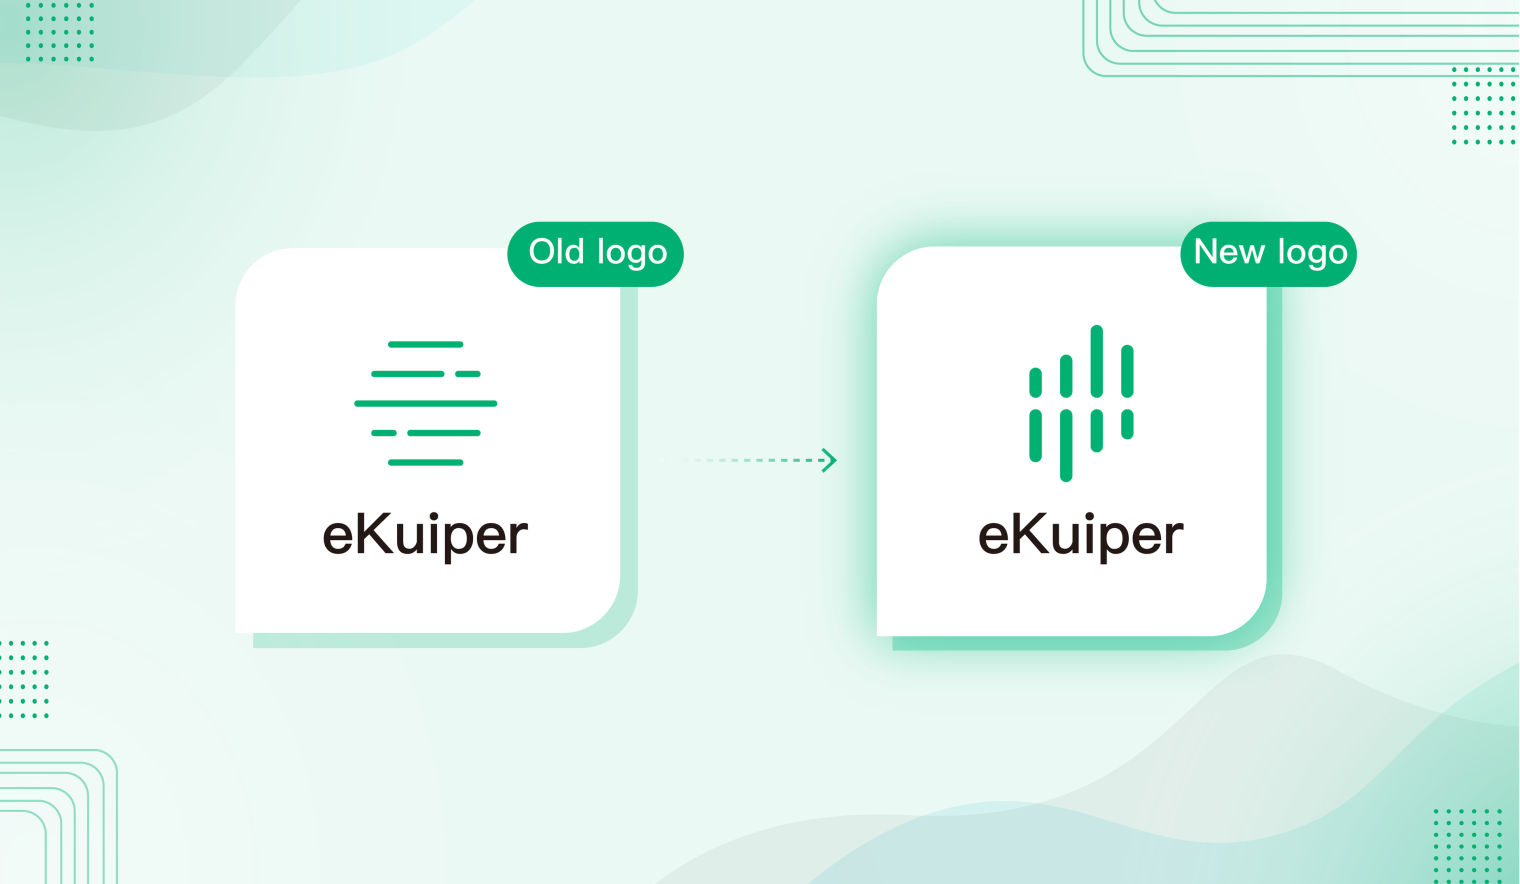 eKuiper old logo vs new logo